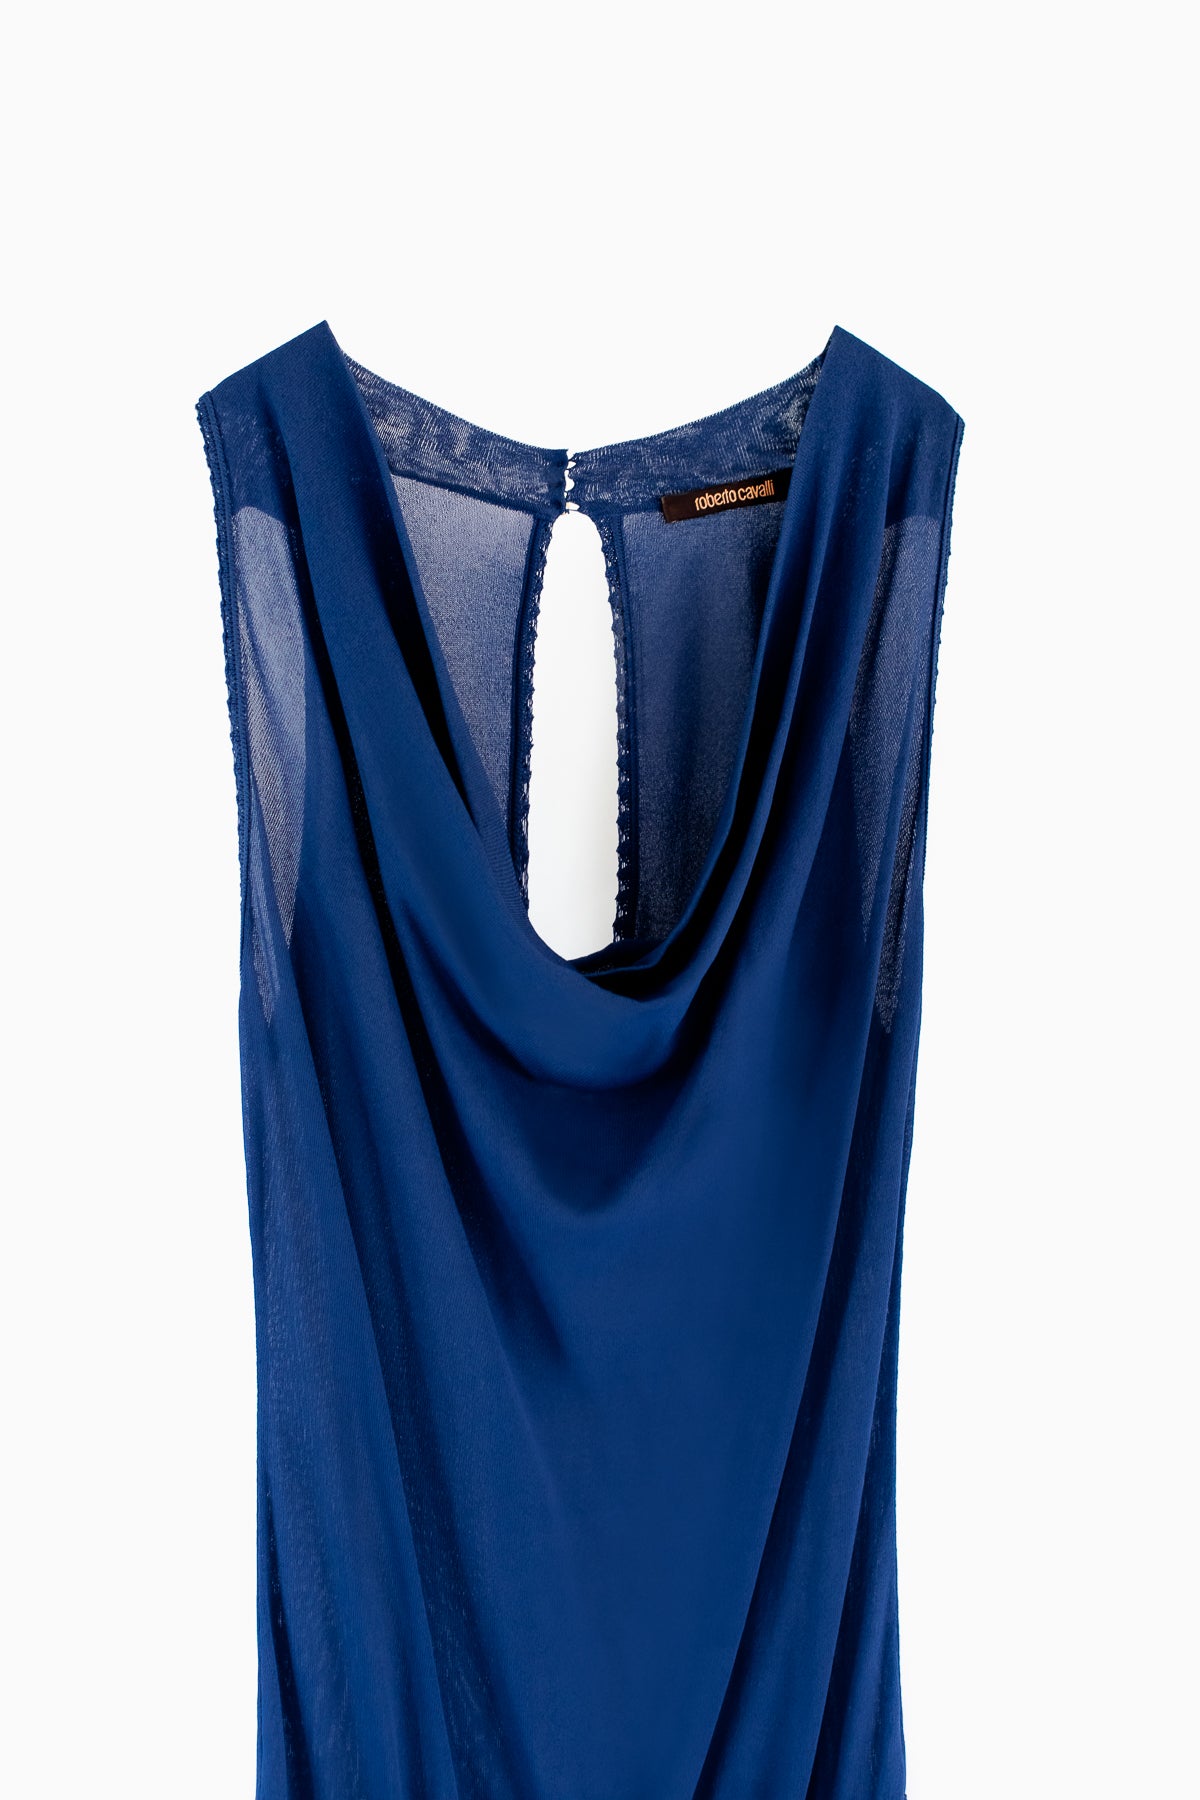 Roberto Cavalli Blue Knit Maxi Dress